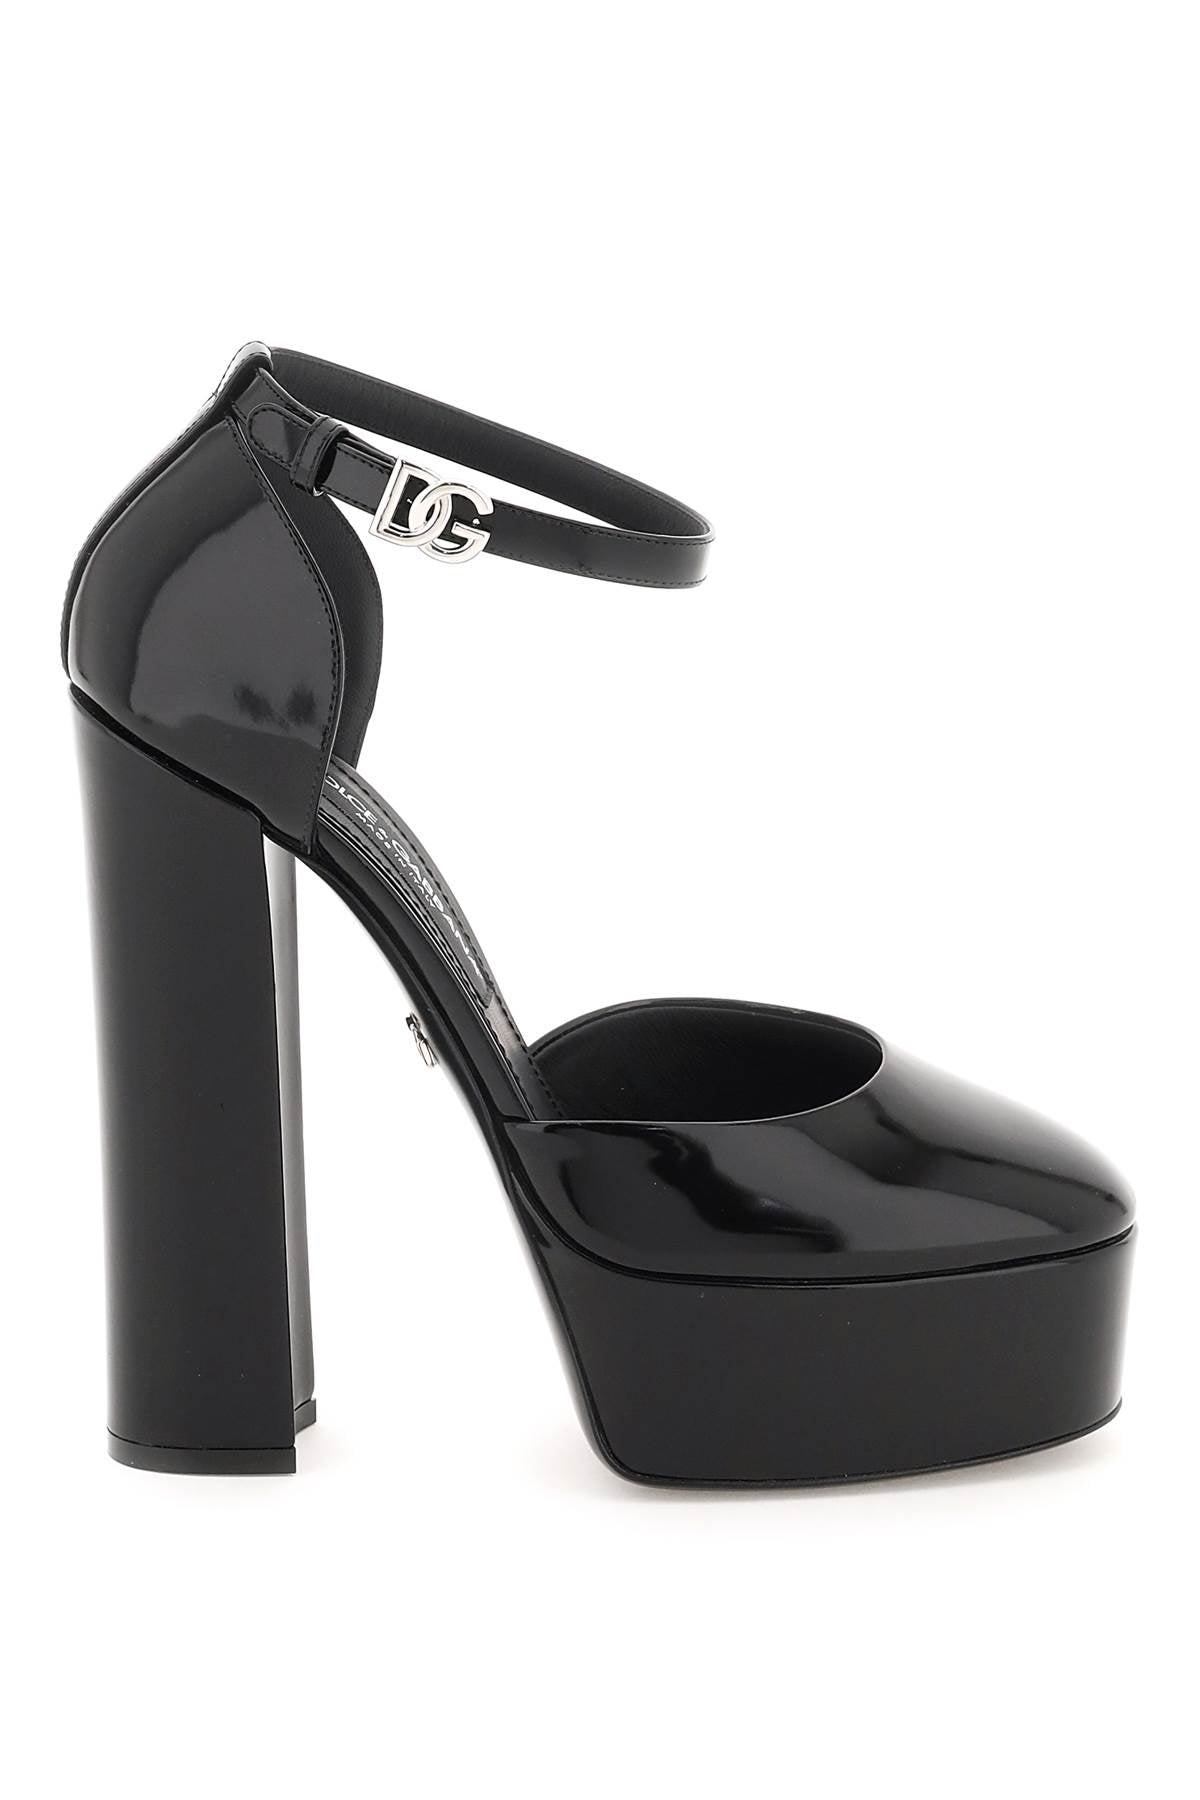 Shop Dolce & Gabbana Elegant Platform Pumps For Women In Black